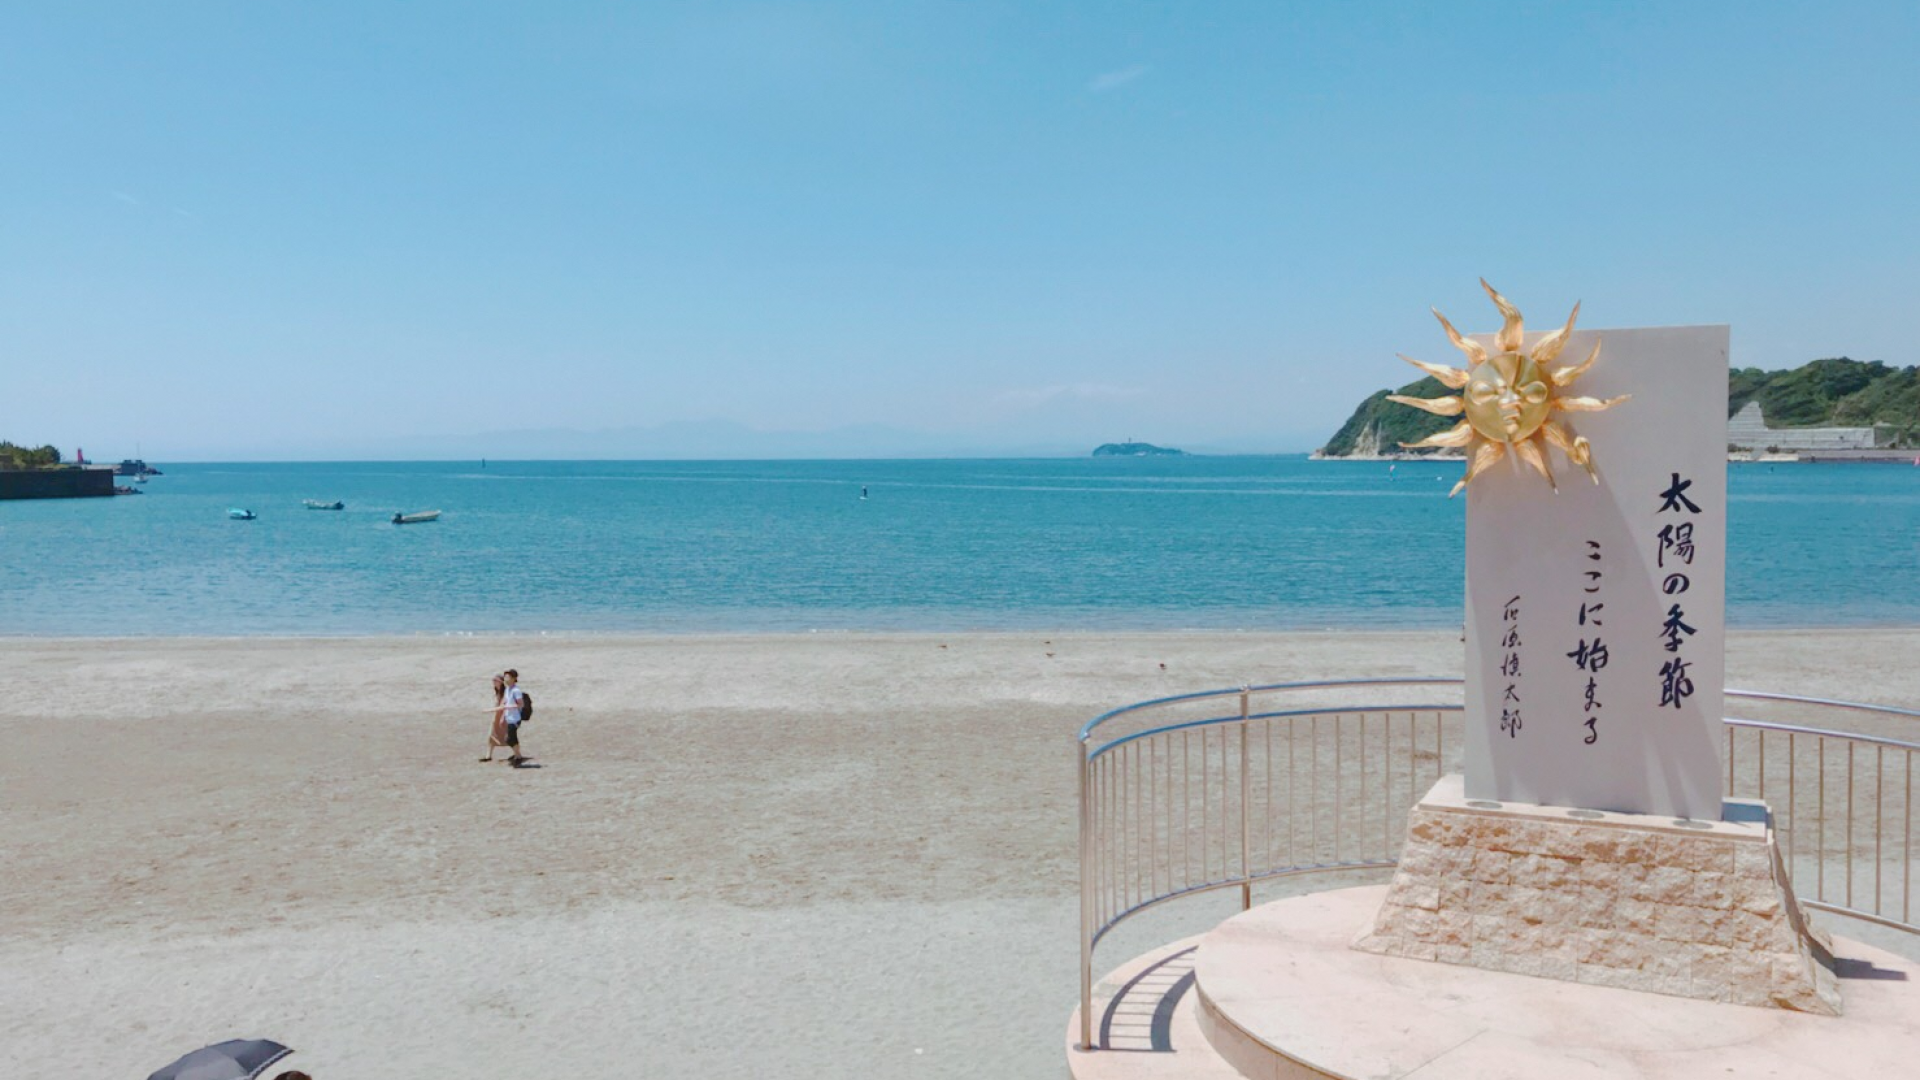 Playa de Zushi Monumento de piedra "Estación del Sol"